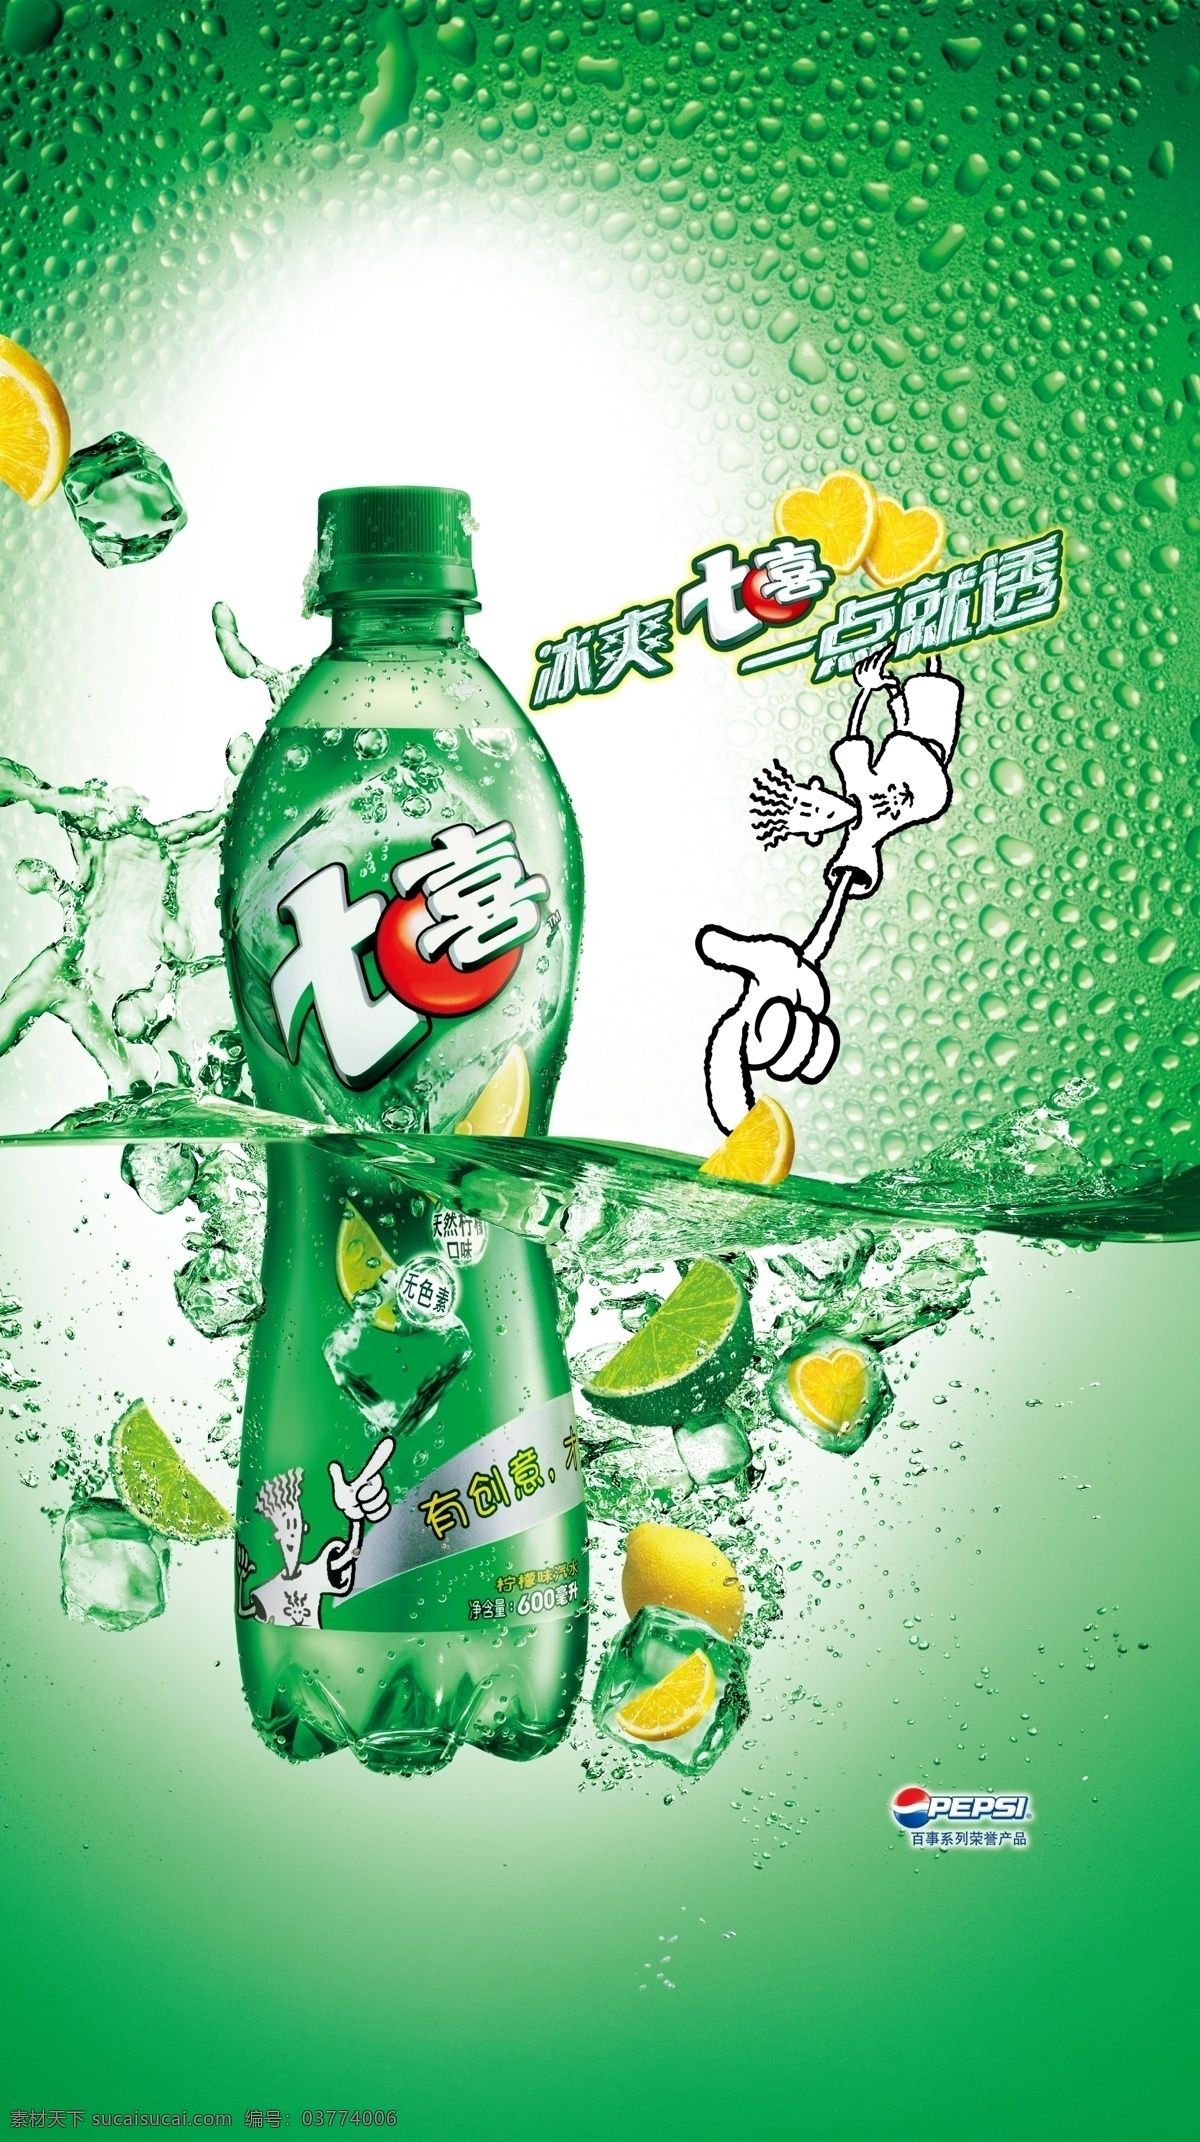 七喜 碳酸 饮料 海报 百事可口 碳酸饮料海报 冰爽 一点就透 广告海报设计